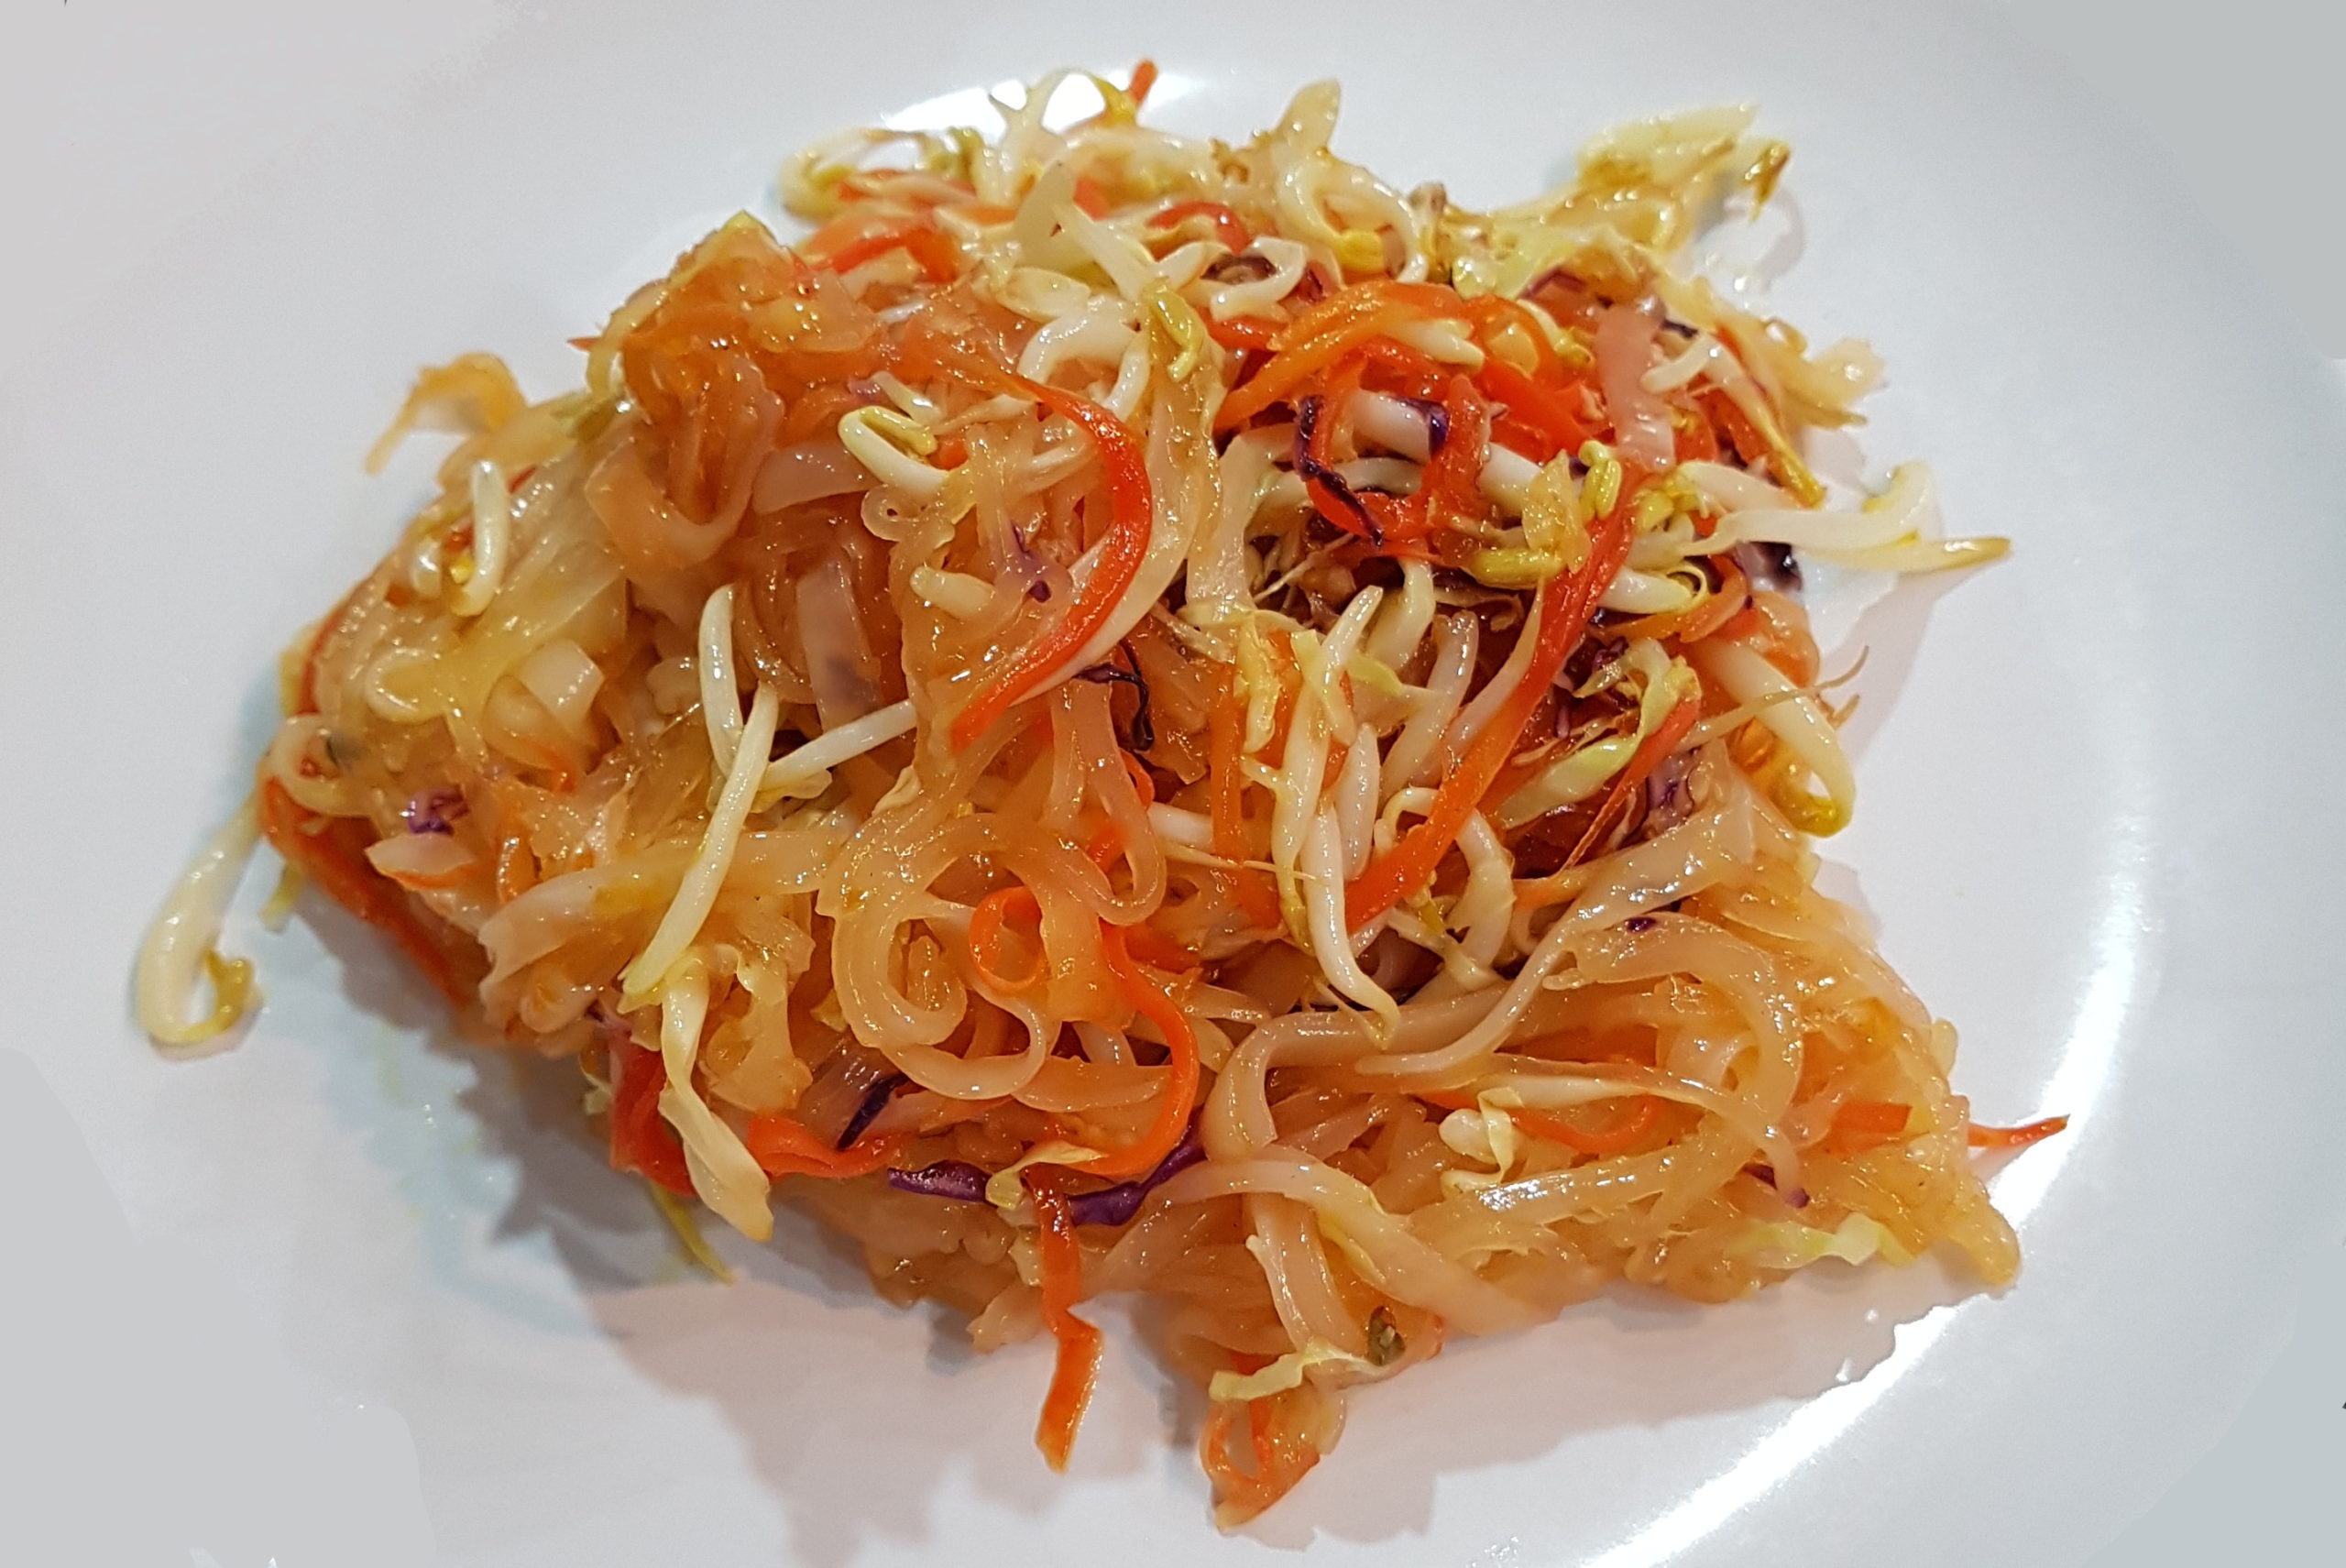 Vegan Pad Thai Rice Noodles in Thailand